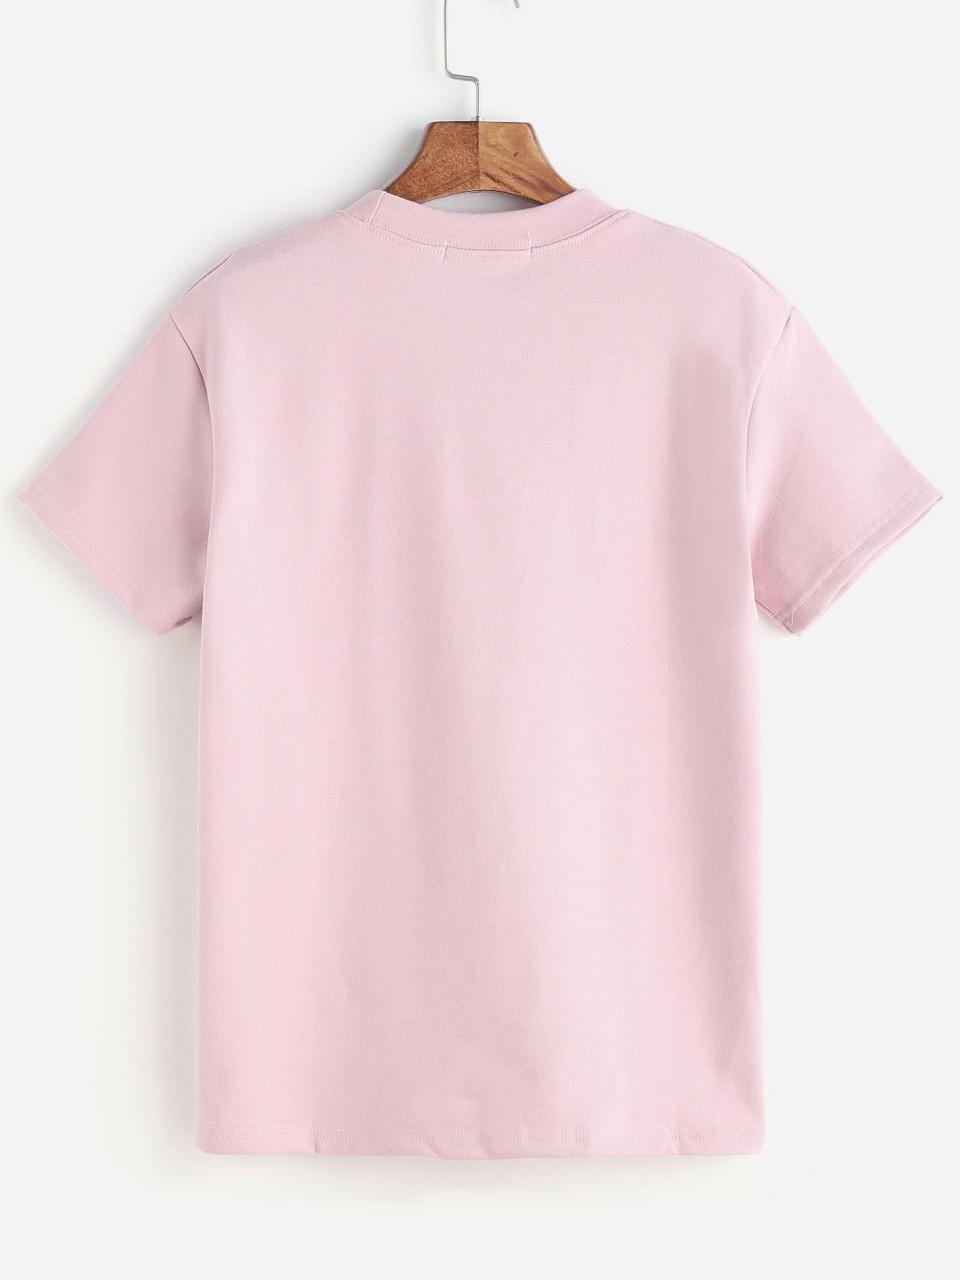 Mockup T Shirt Pink